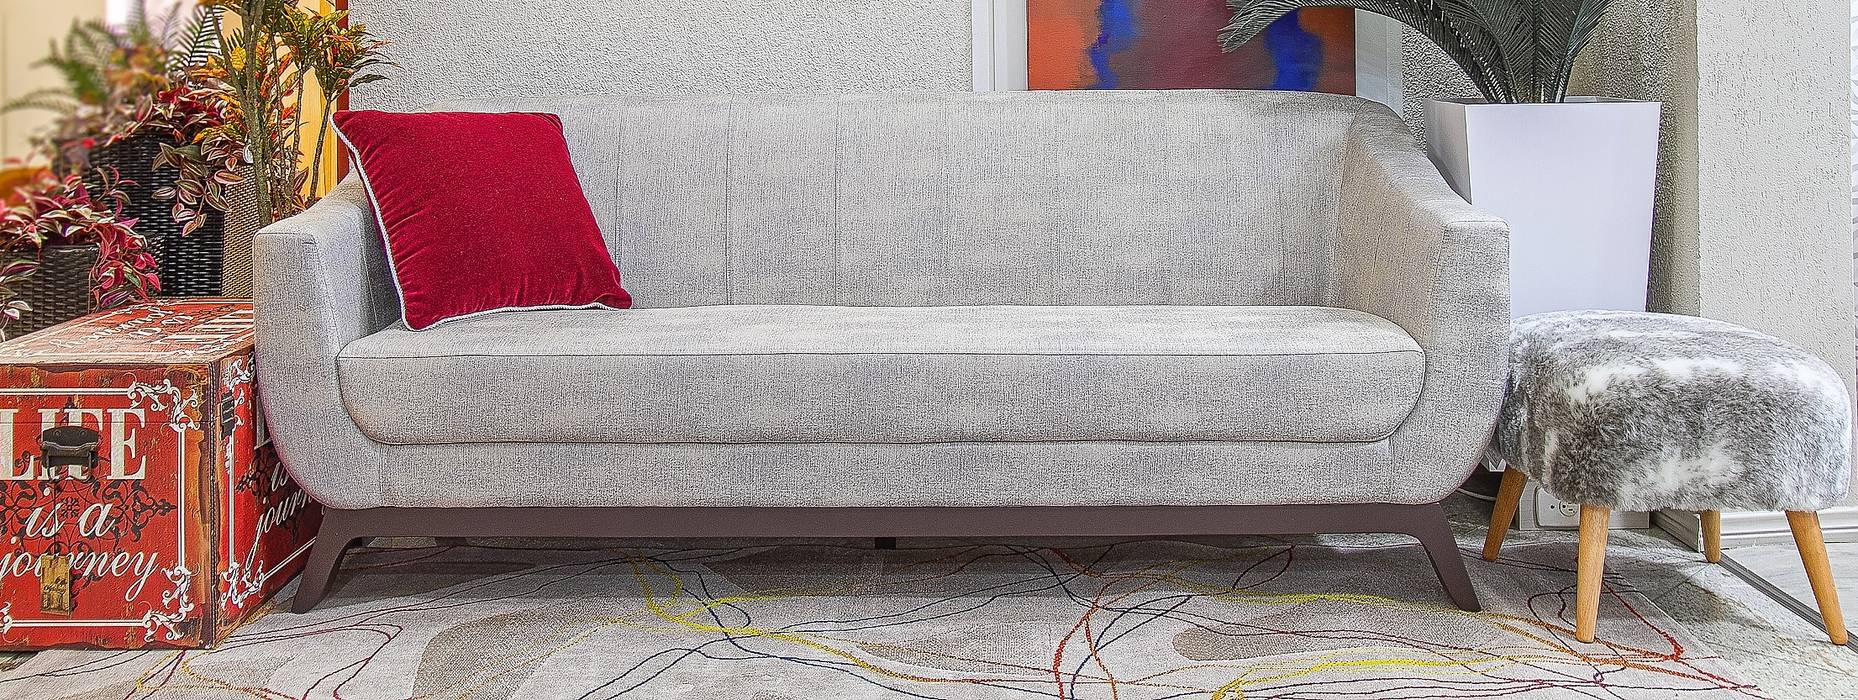 Releituras Modernas Sgabello Interiores Salas de estar modernas Algodão Vermelho sofá,sofá cinza,Sofás e divãs